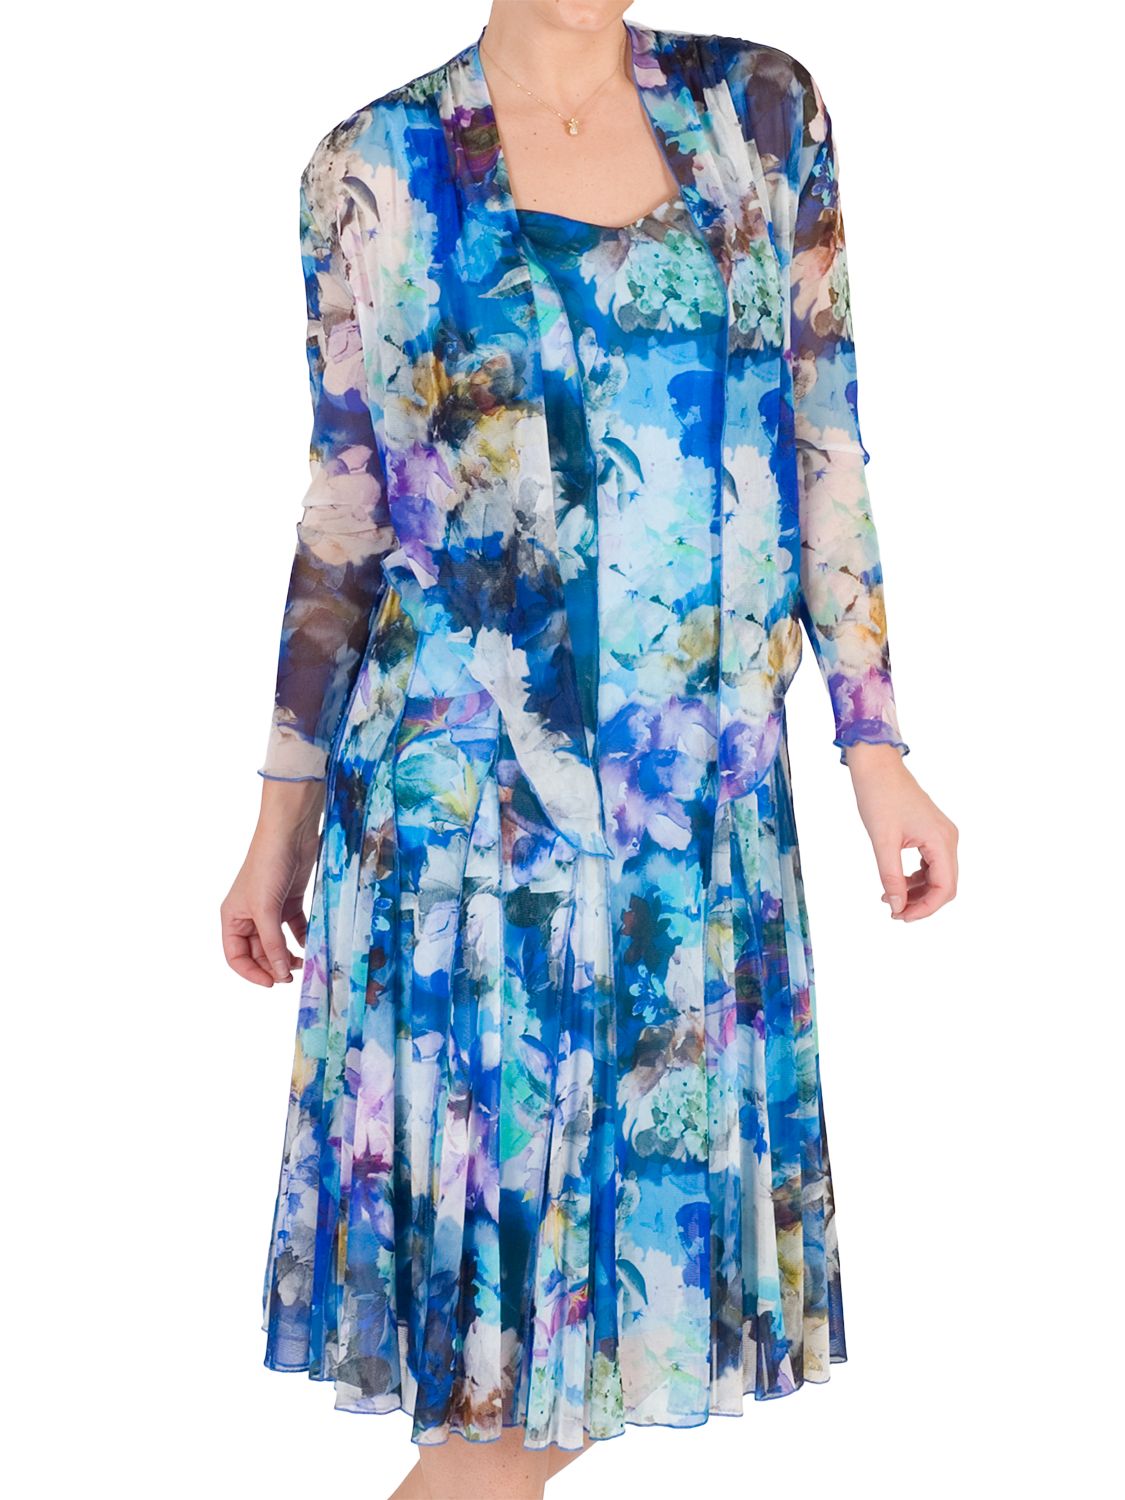 Chesca Floral Print Mesh Dress and Bolero, Blue/Multi